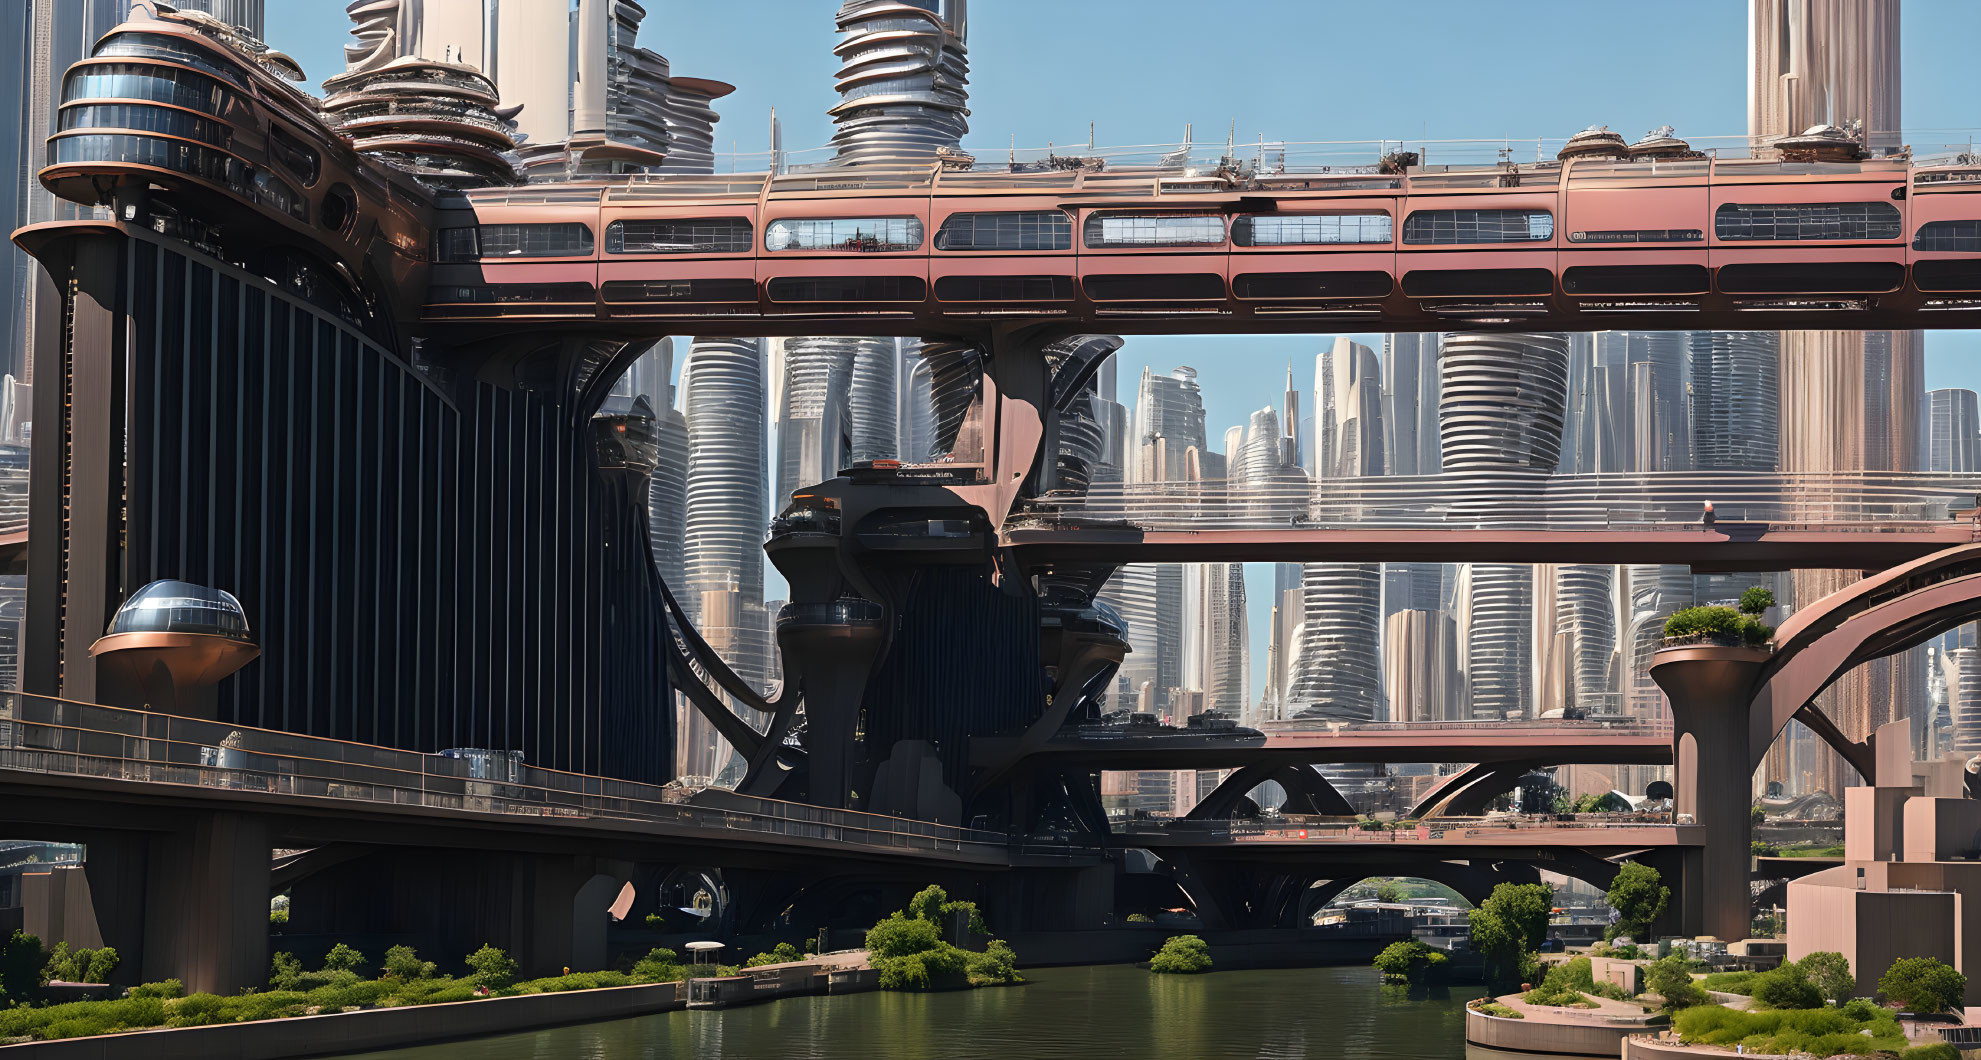 The Bridges of a big City